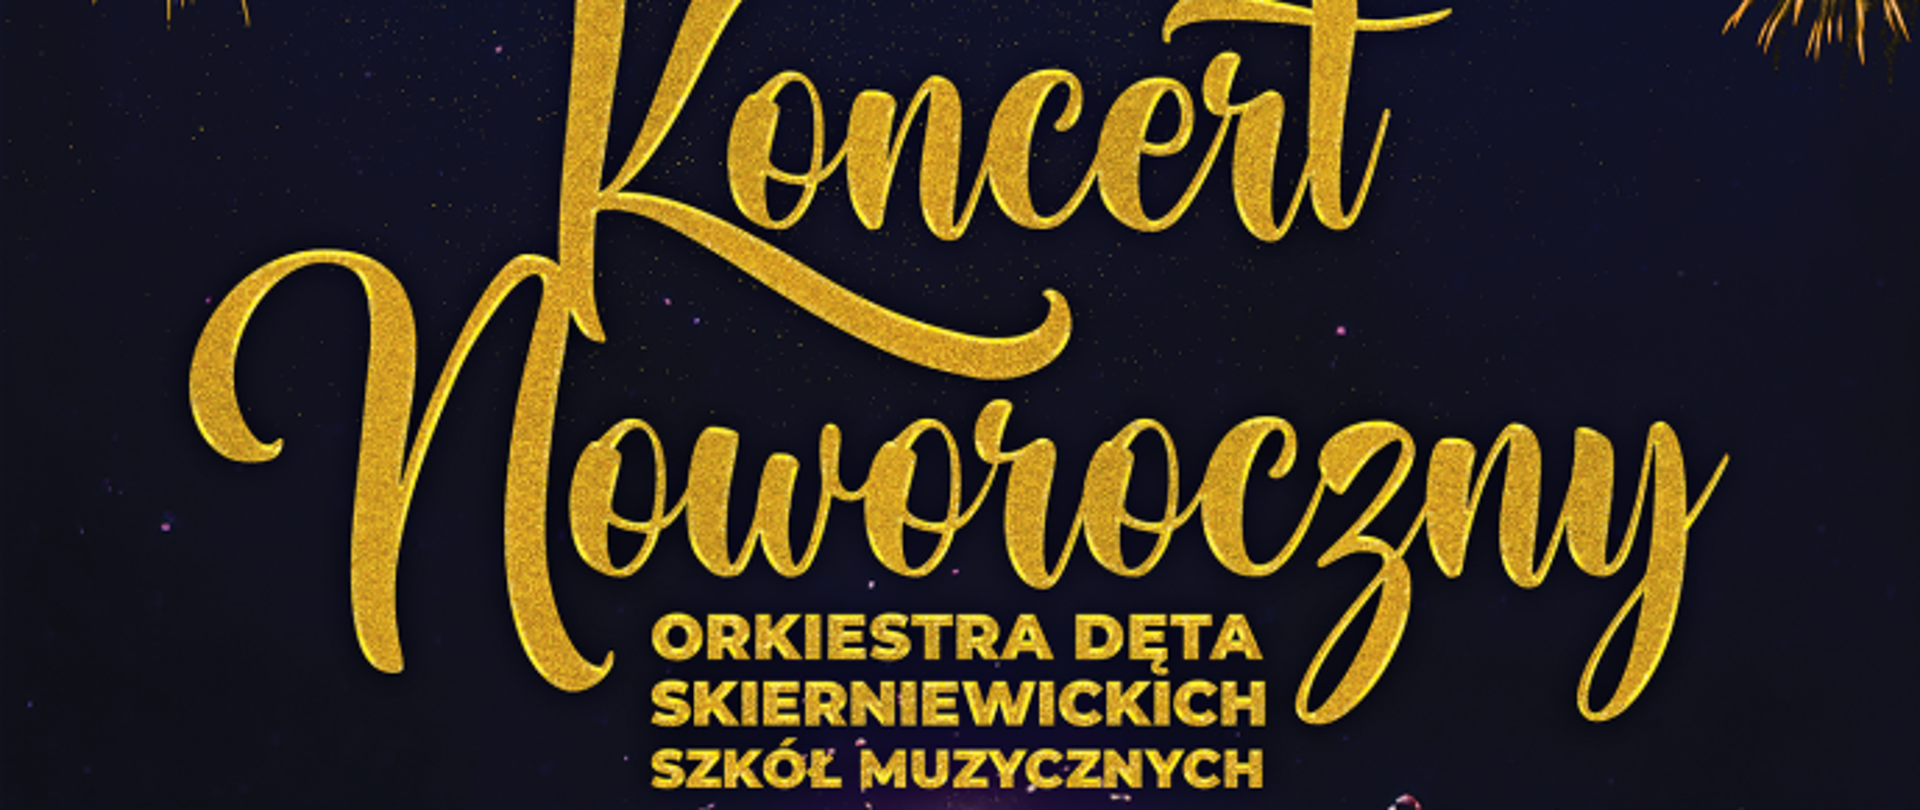 Plakat na czarnym tle przedstawiający napis złotymi literami Koncert karnawałowy, orkiestra dęta skierniewickich szkół muzycznych